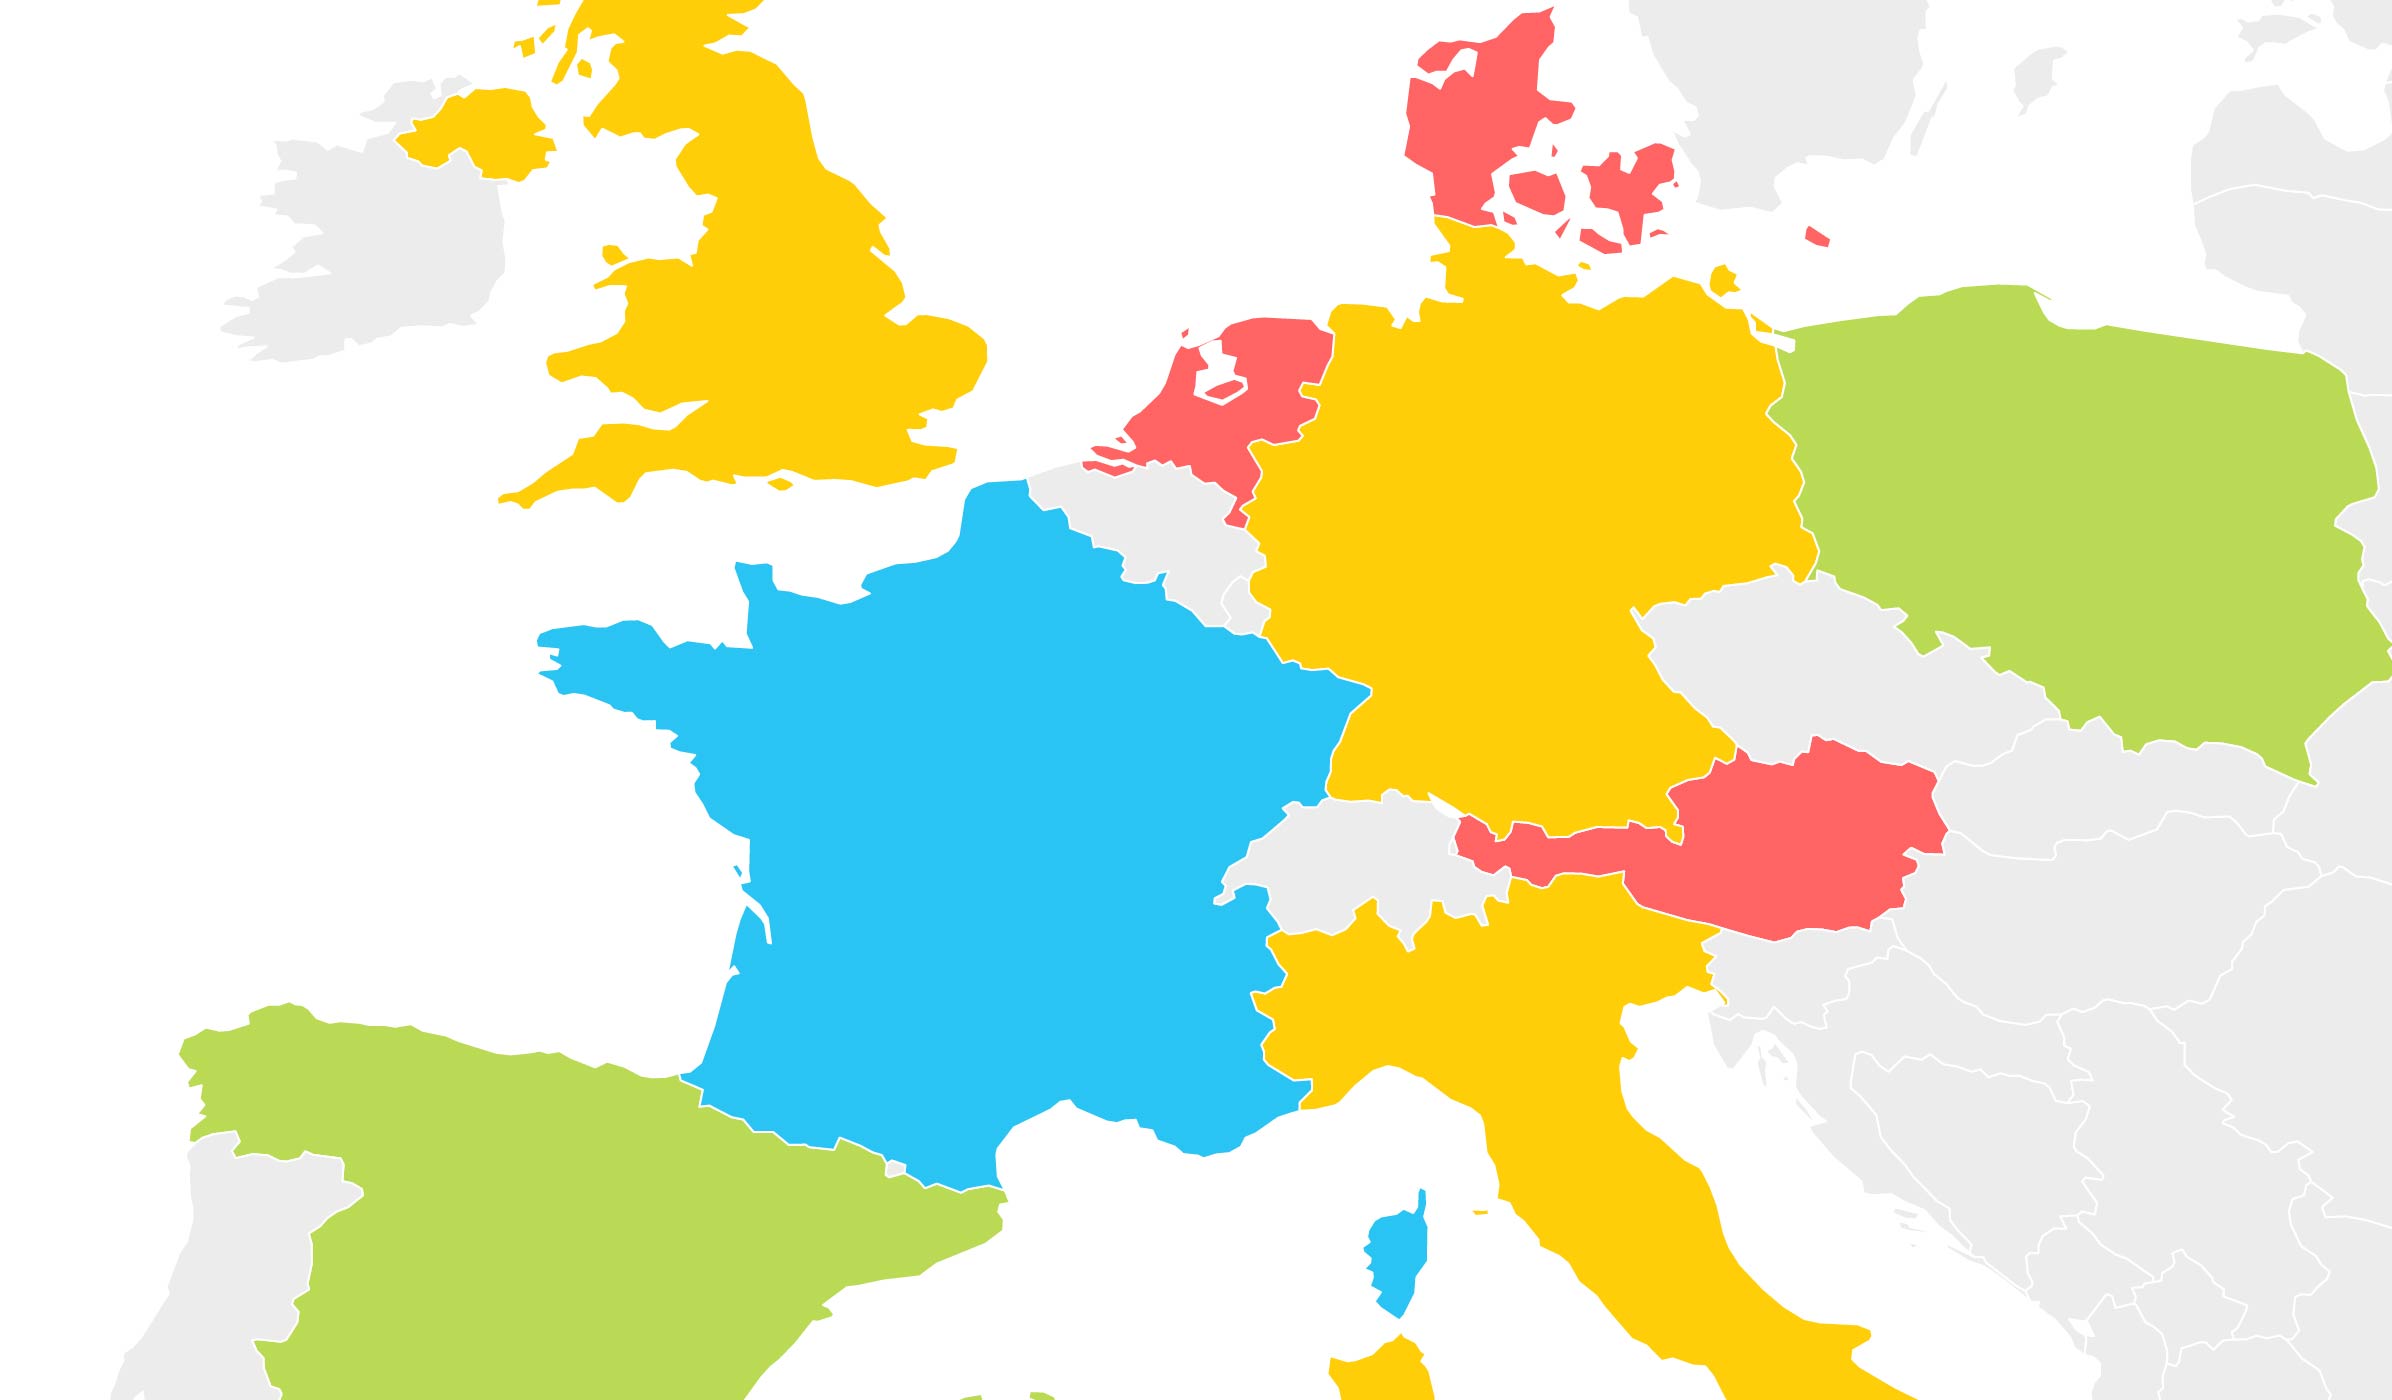 Verpackungslizenz Europa: Verpackungen europaweit gesetzeskonform in Umlauf bringen